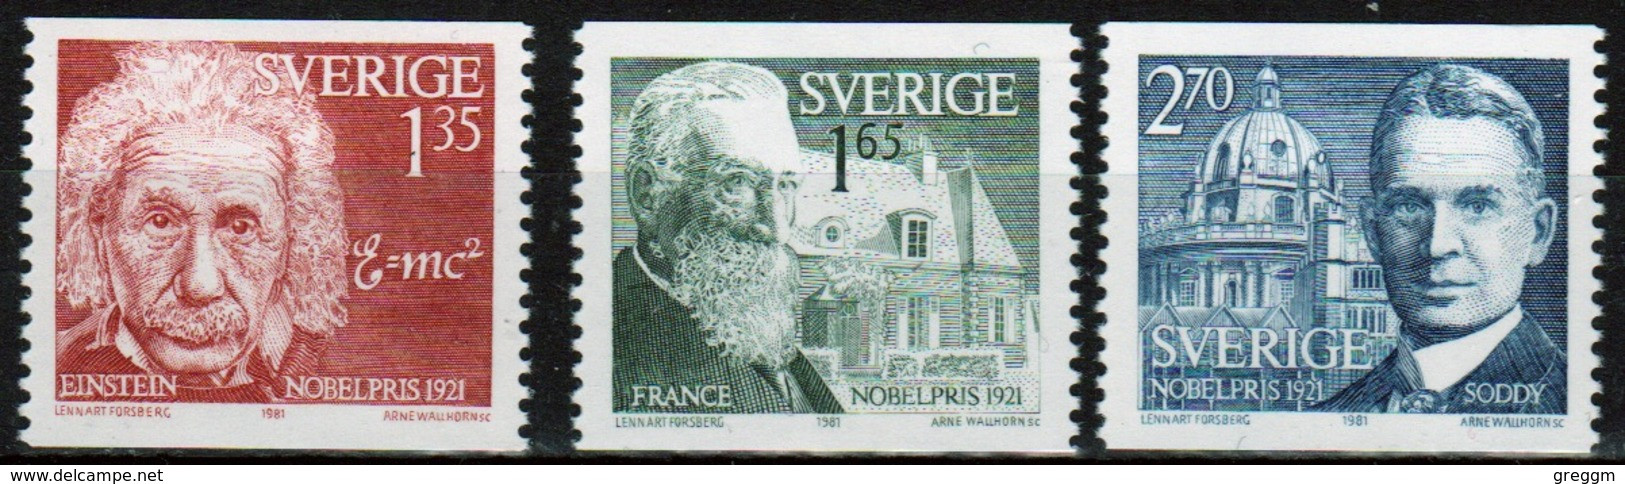 Sweden Set Of Stamps From 1981 To Celebrate Nobel Prize Winner Of 1921. - Ongebruikt